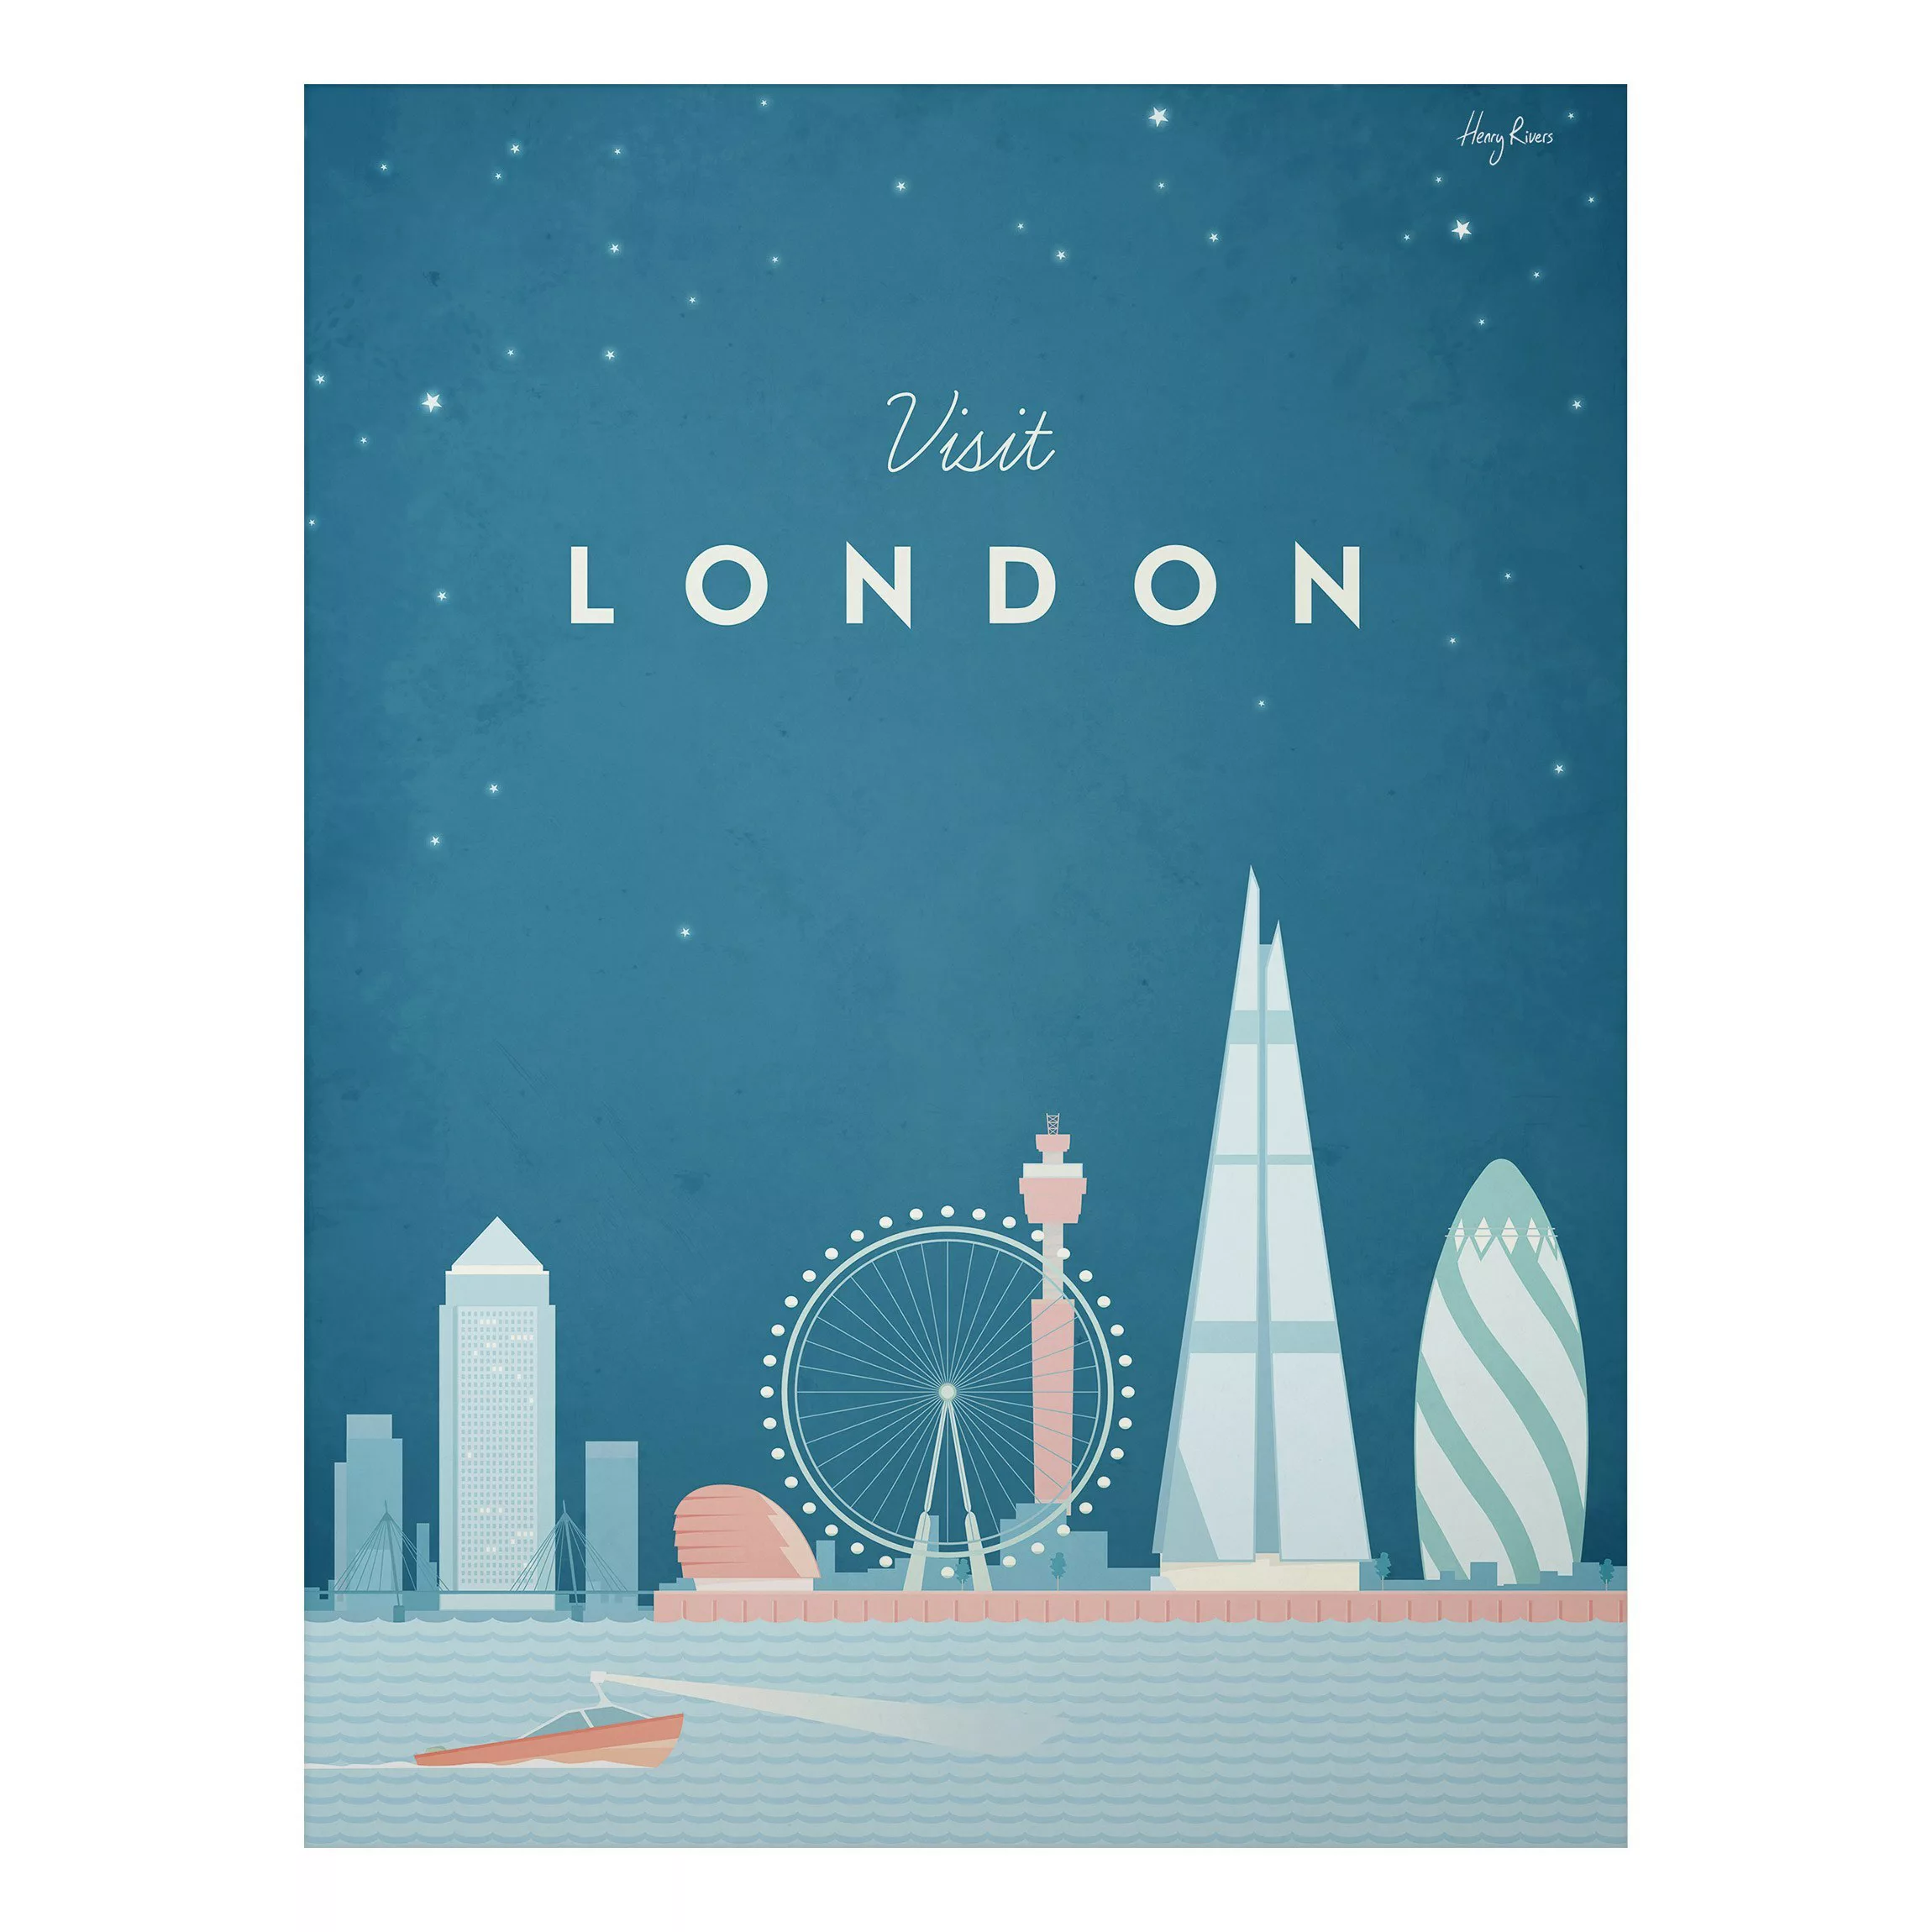 Alu-Dibond Bild Kunstdruck - Hochformat 3:4 Reiseposter - London günstig online kaufen